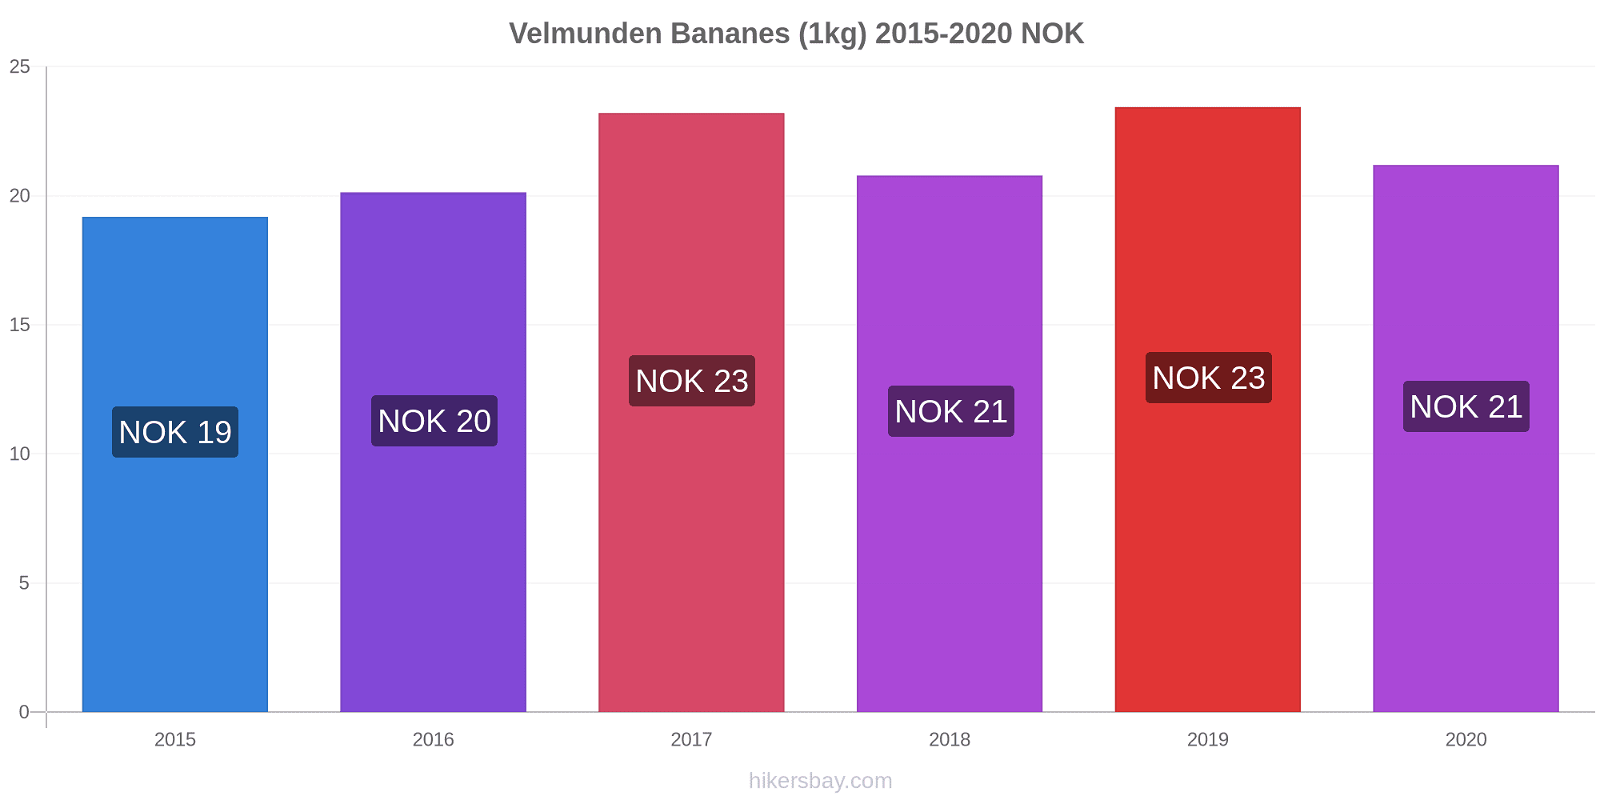 Velmunden changements de prix Bananes (1kg) hikersbay.com